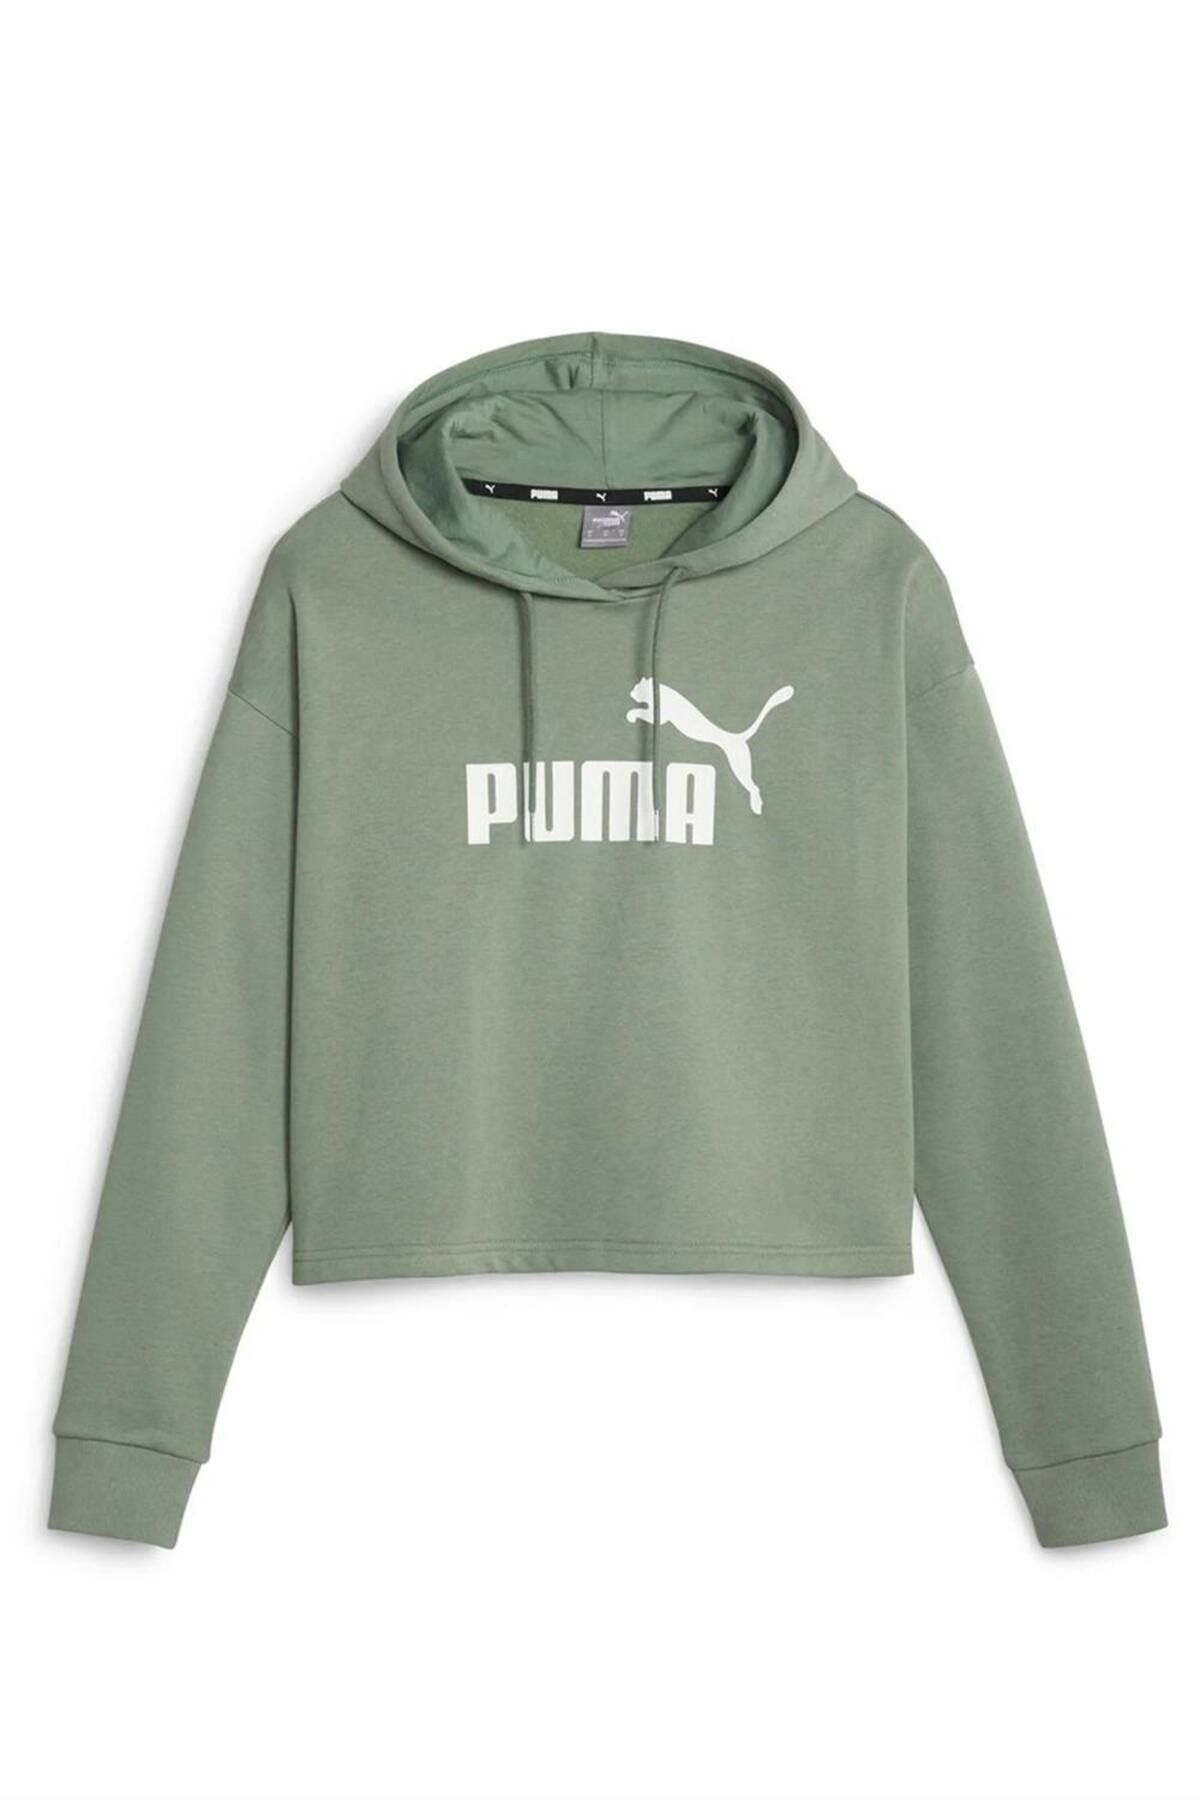 Puma Ess Cropped Logo Kadın Sweat Shırt 58686948